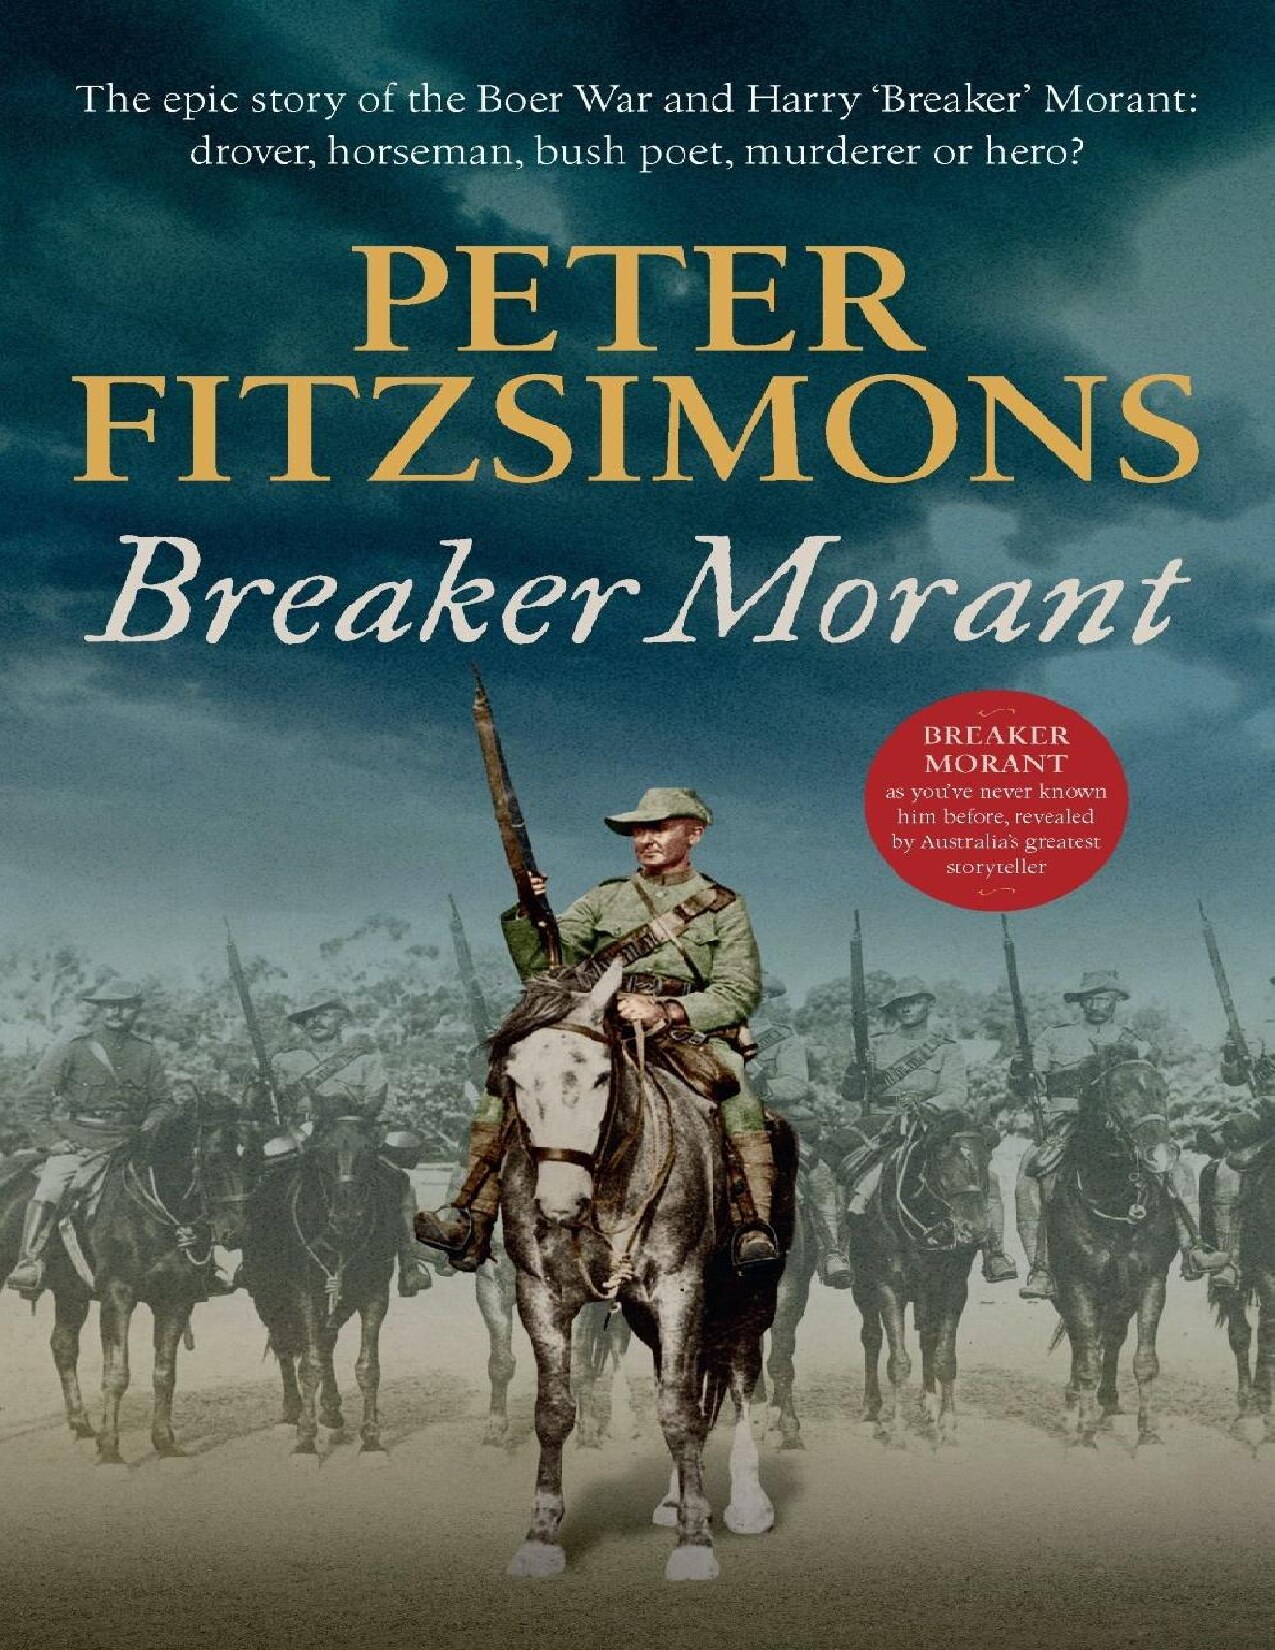 Breaker Morant : The Epic Story of the Boer War and Harry 'Breaker' Morant - Drover, Horseman, Bush Poet - Murderer or Hero?